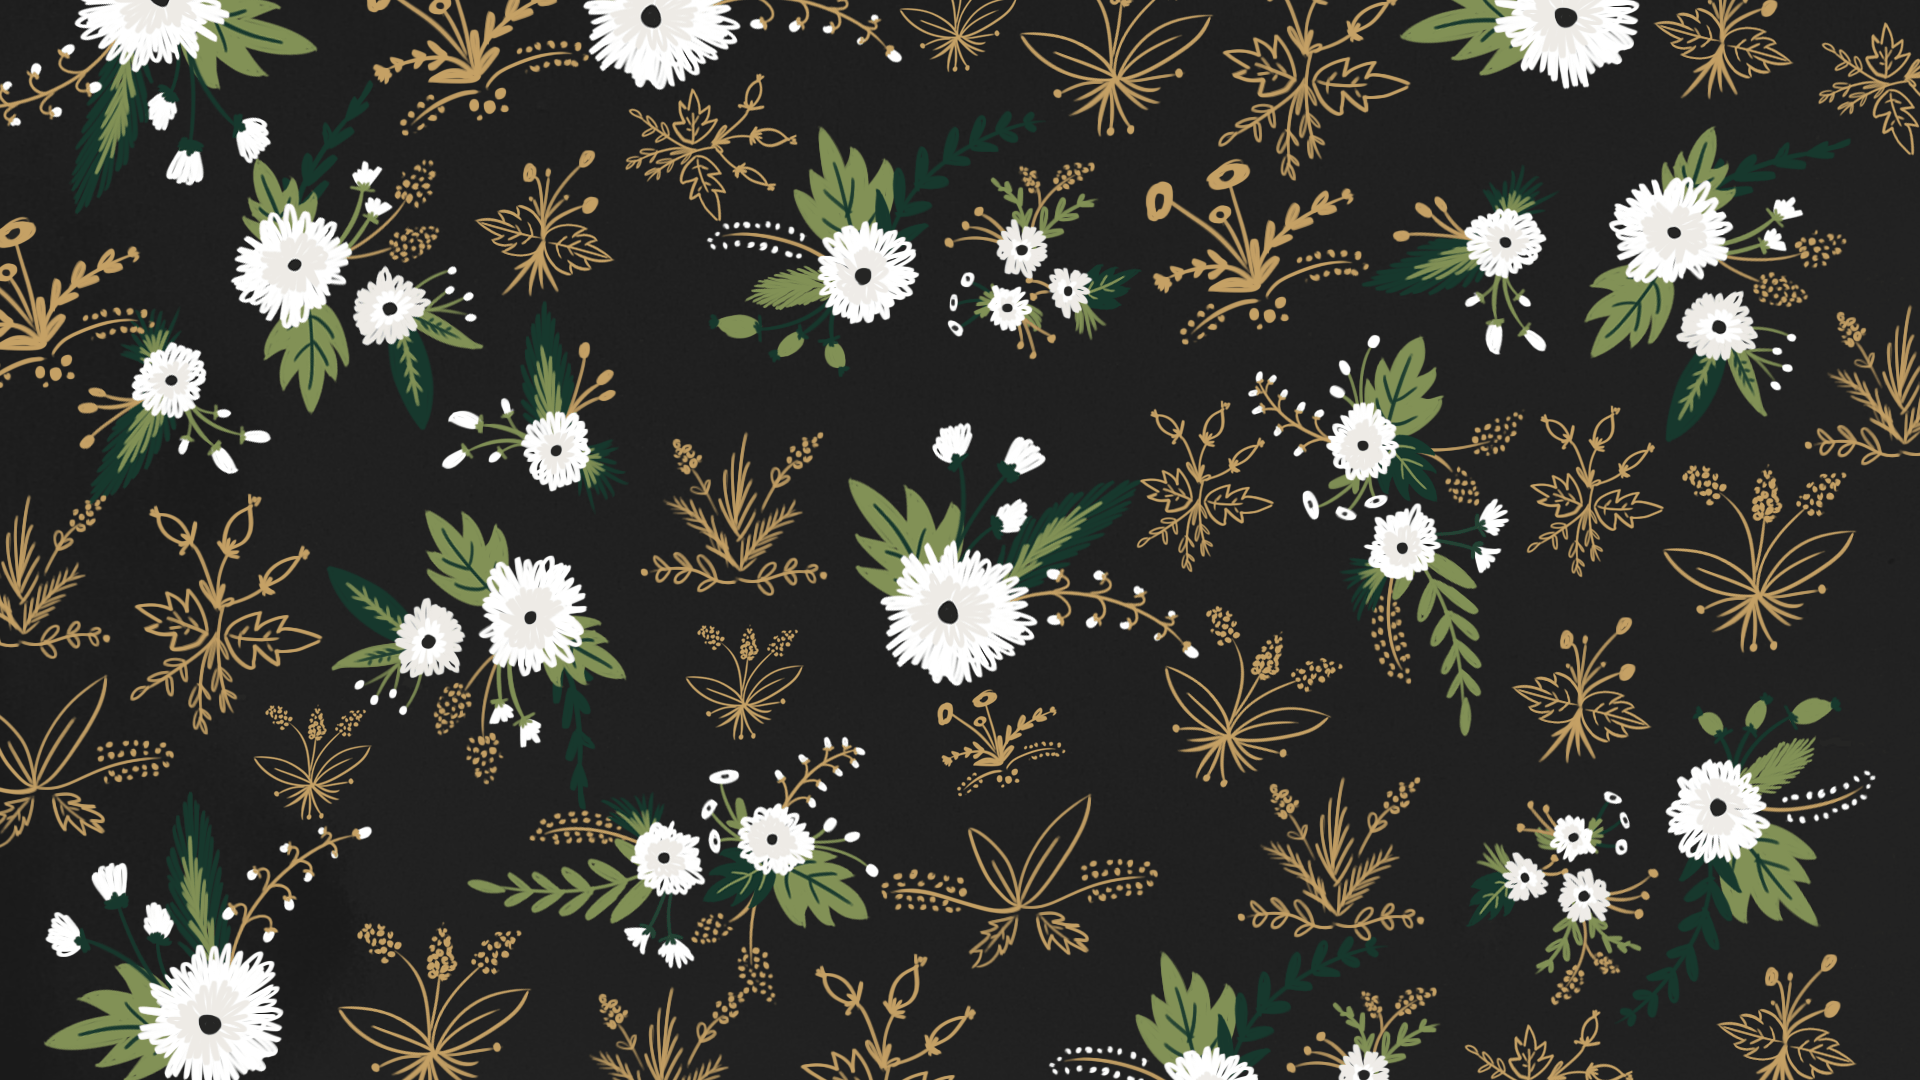 Black Floral Desktop Wallpapers - Top Free Black Floral Desktop